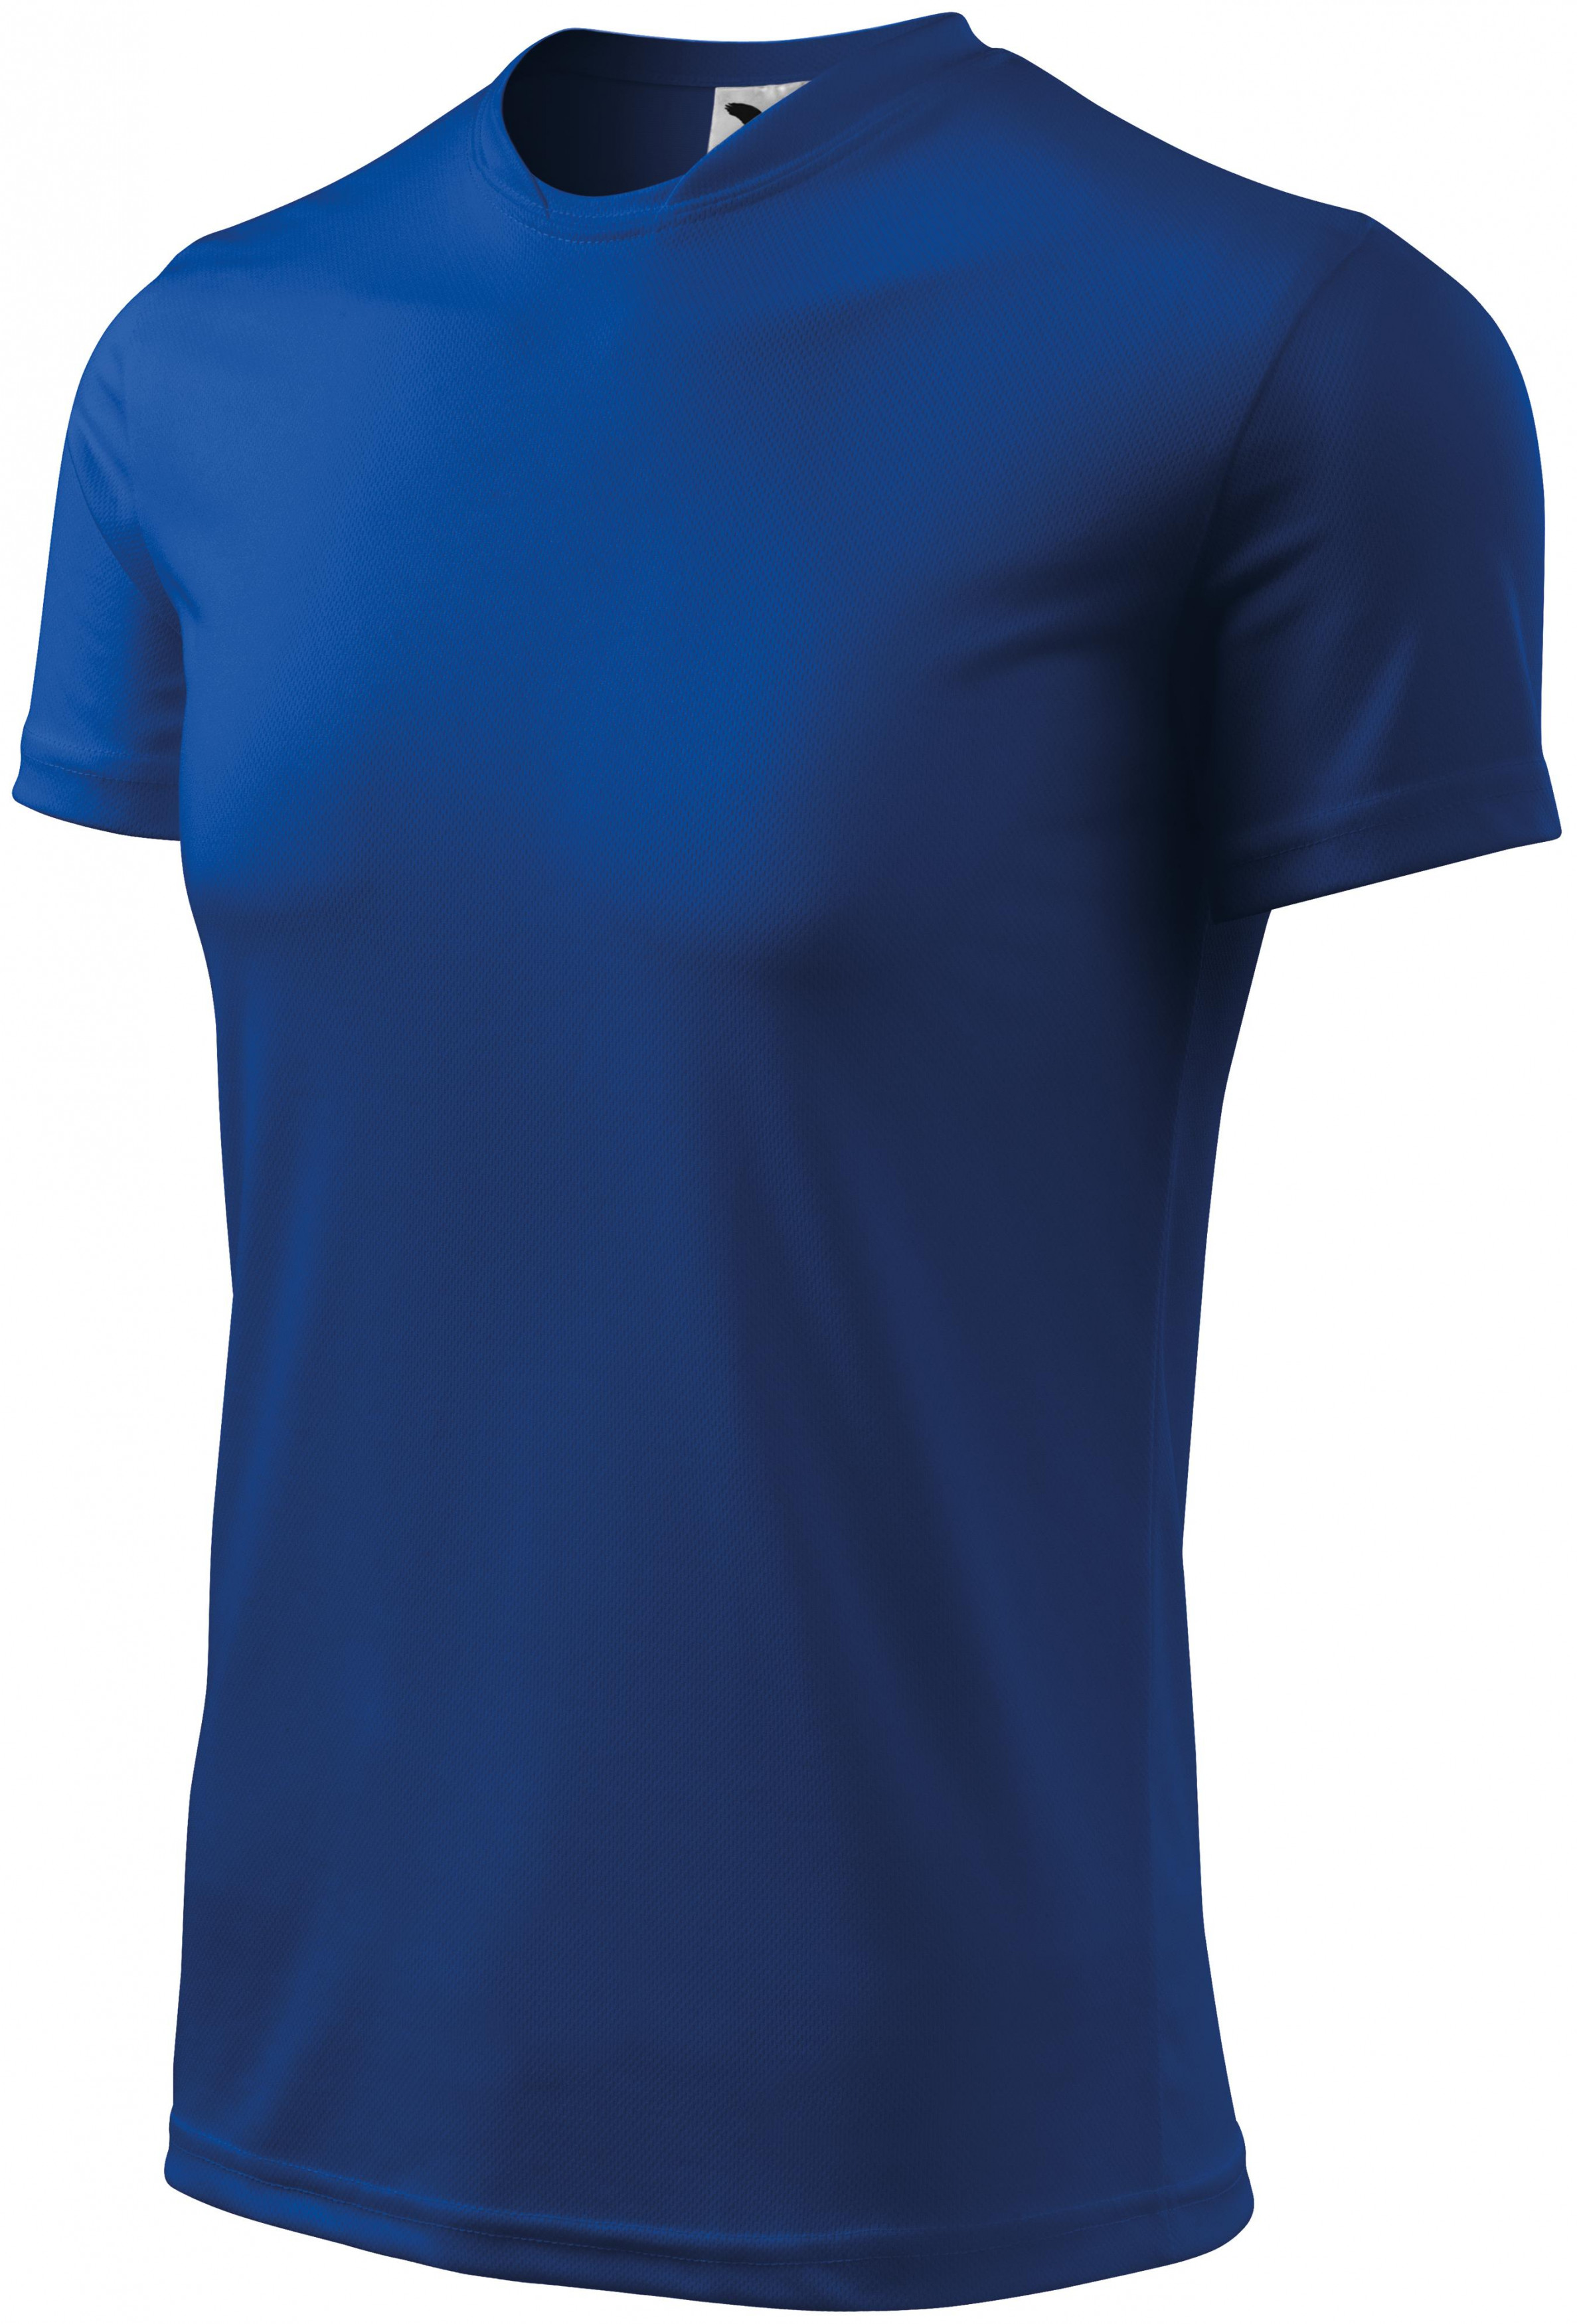 Športové tričko detské, kráľovská modrá, 134cm / 8rokov